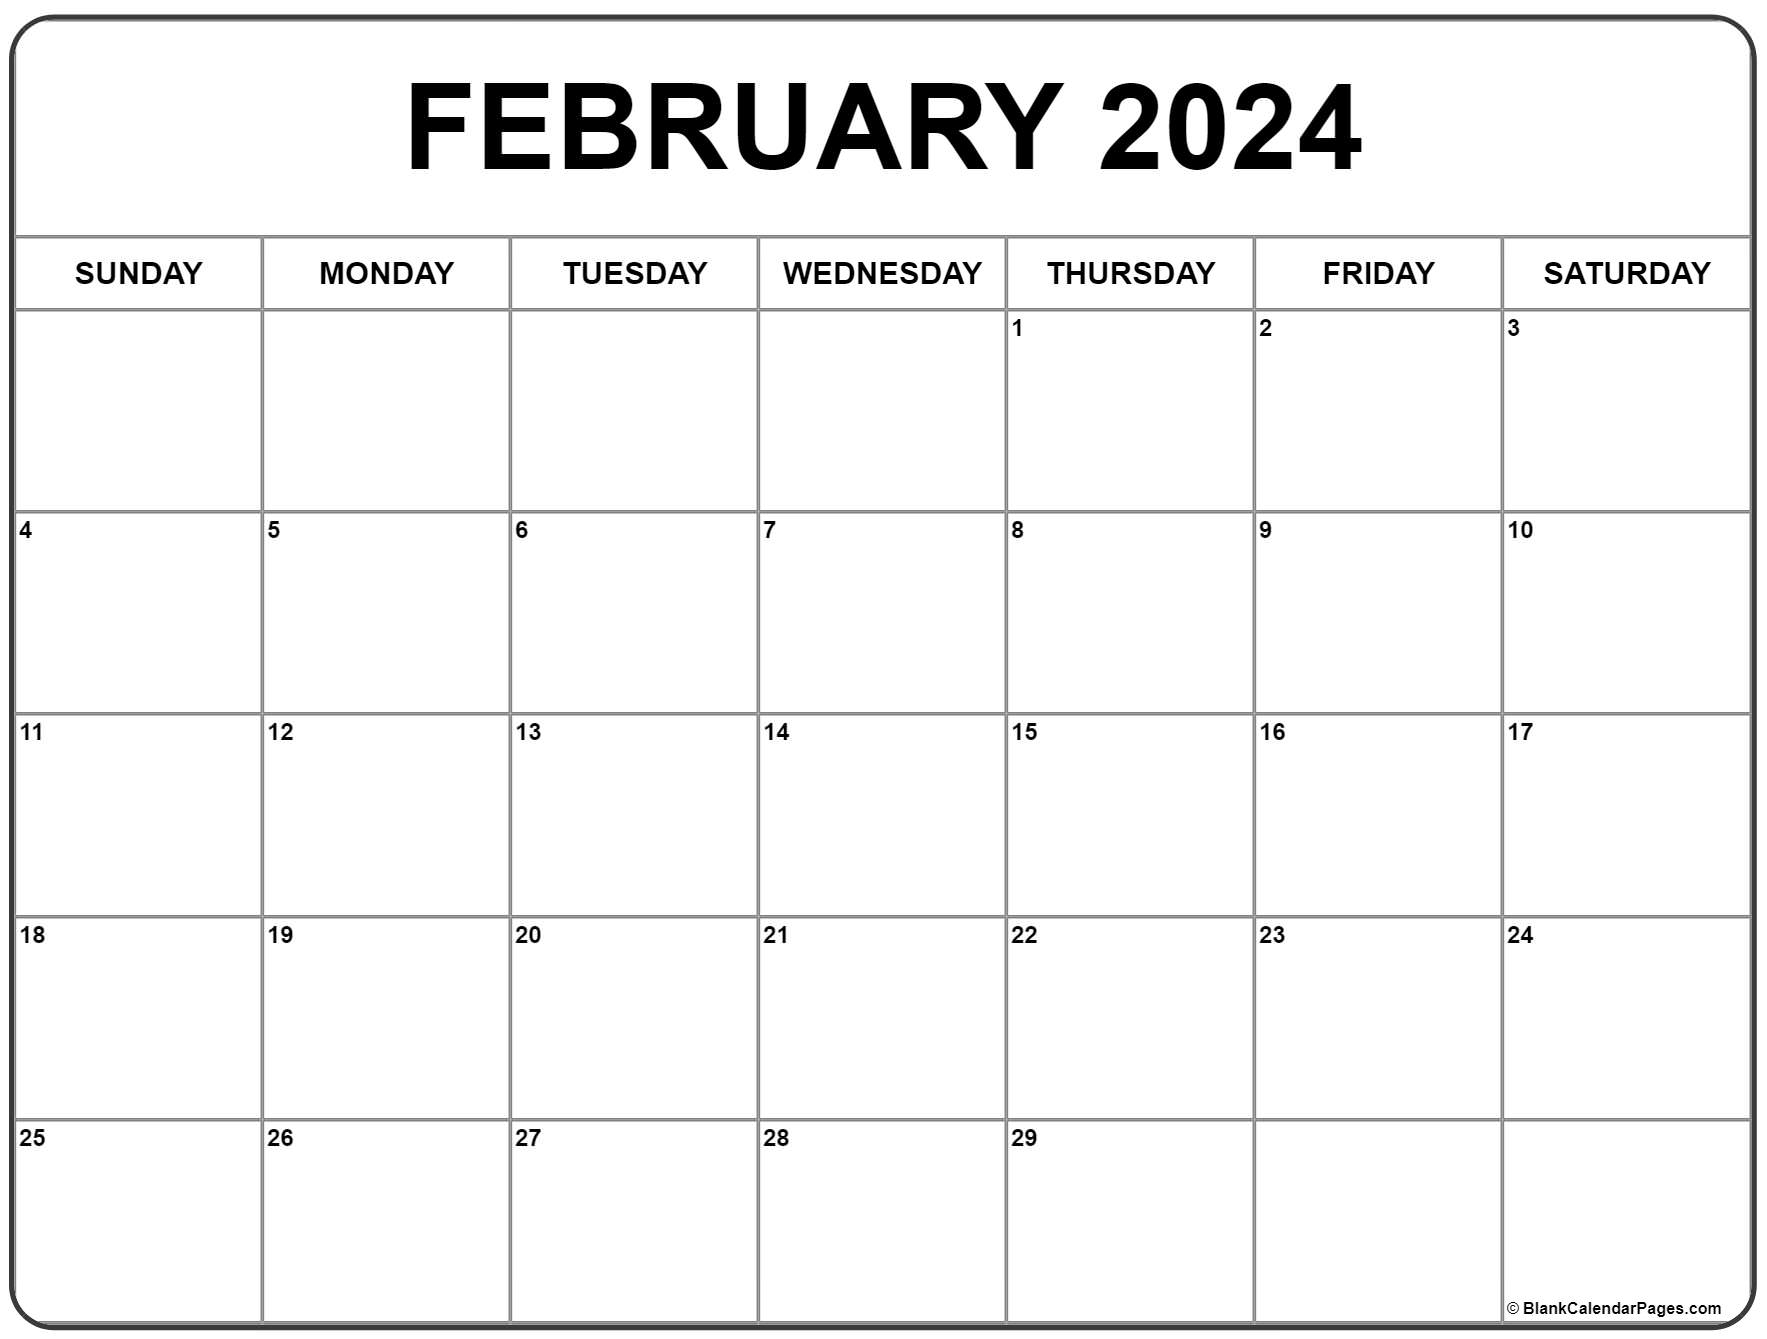 February 2024 Calendar | Free Printable Calendar for Printable 2024 February Calendar